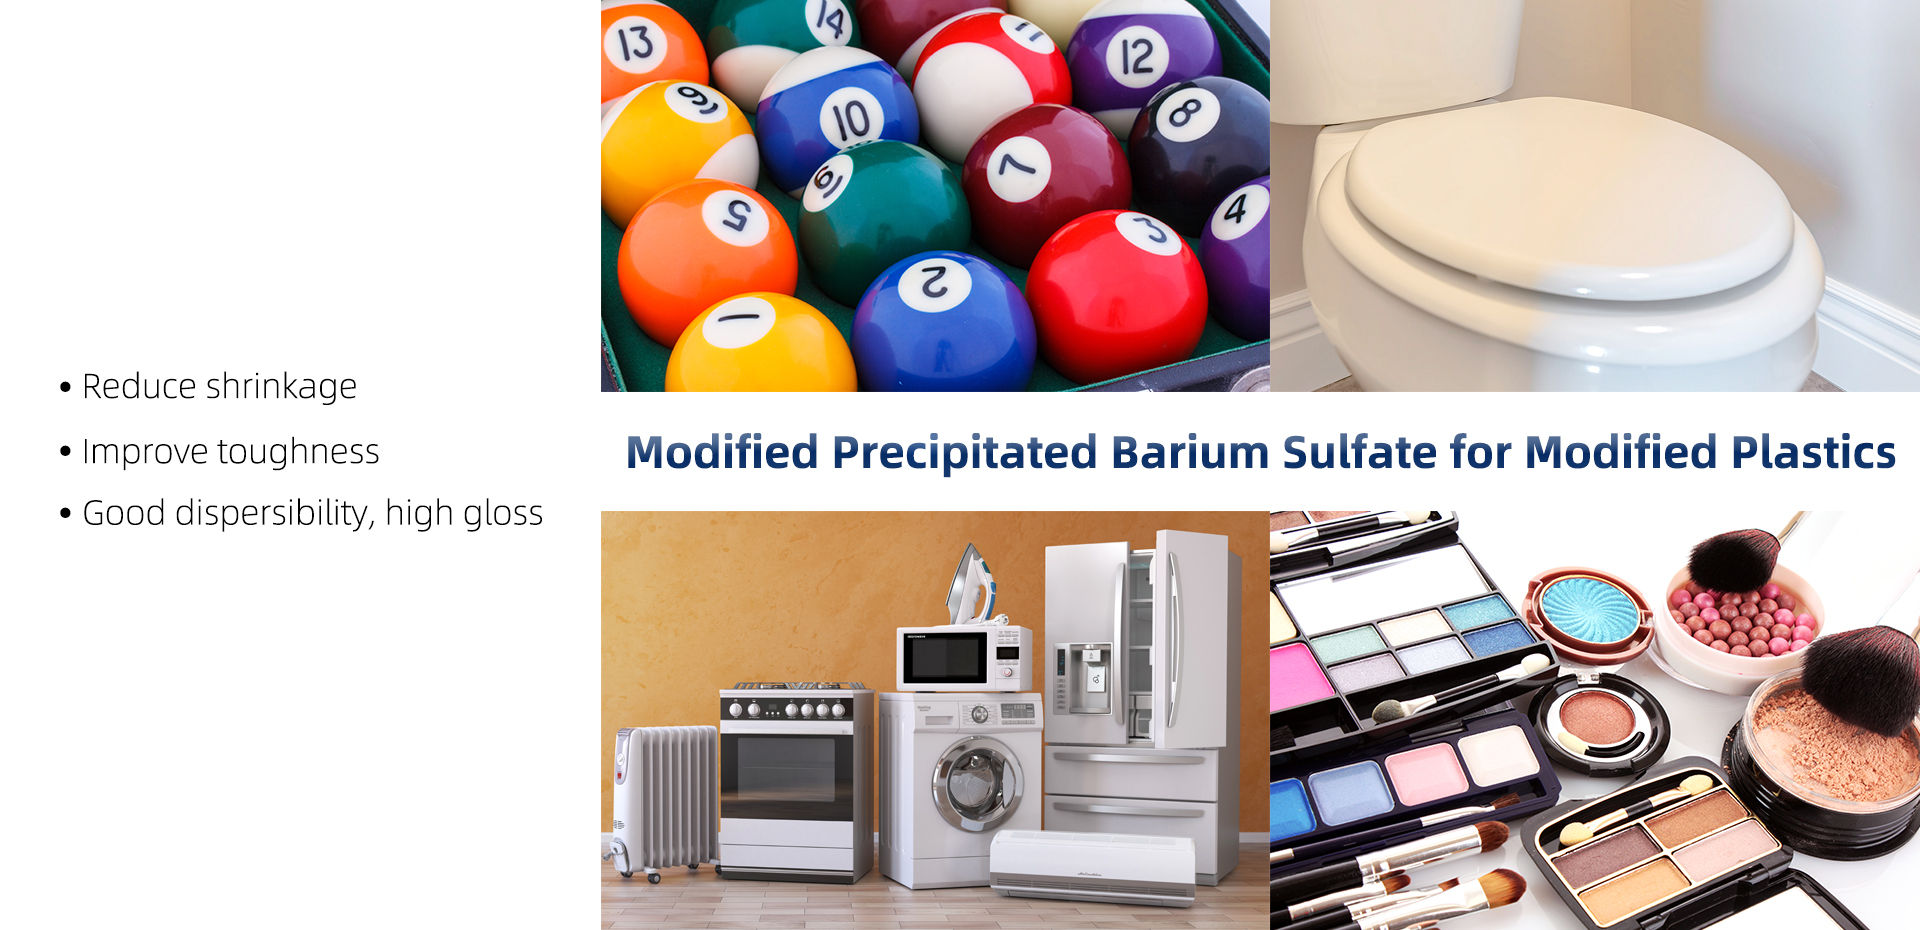 Modified Precipitated Barium Sulfate for Modified Plastics